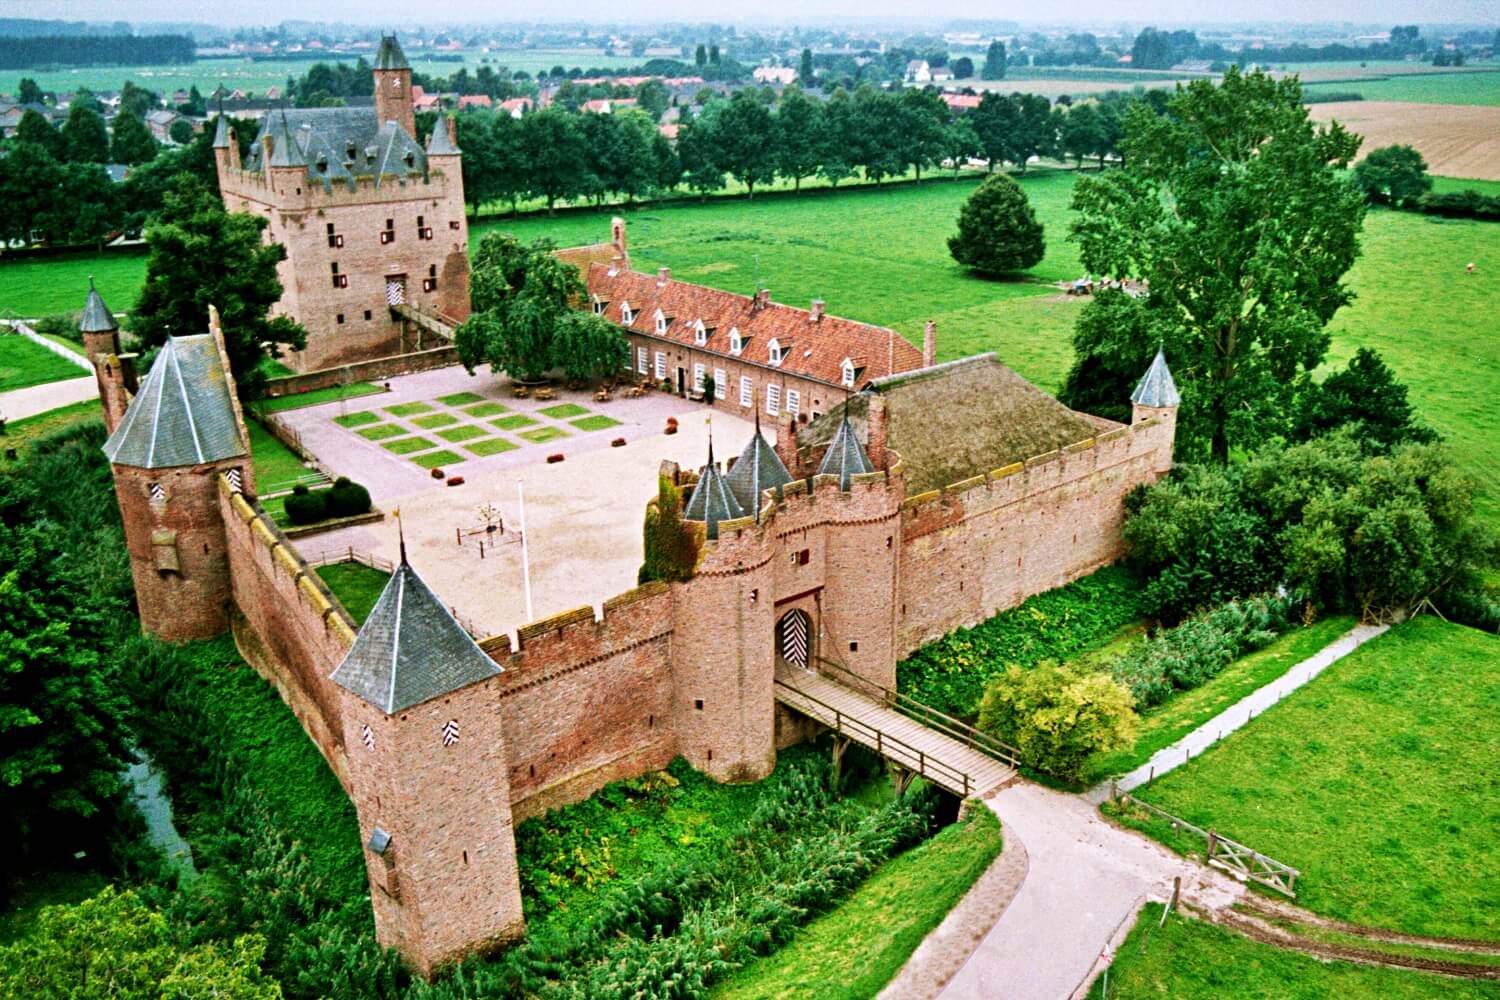 Doornenburg Castle
